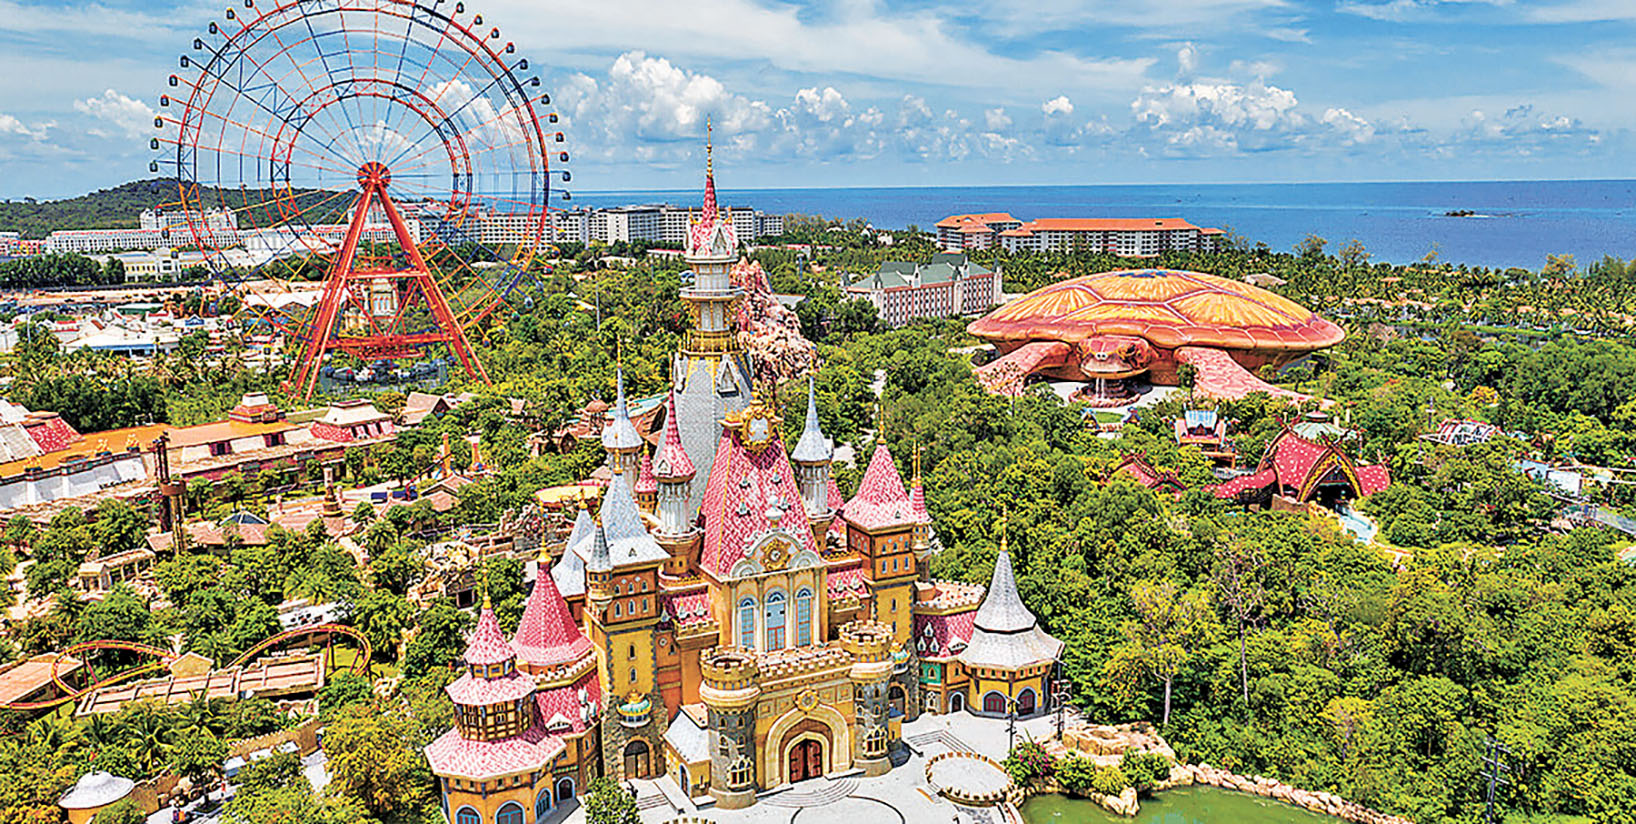 ■「珍珠奇幻樂園」號稱越南版迪士尼樂園。